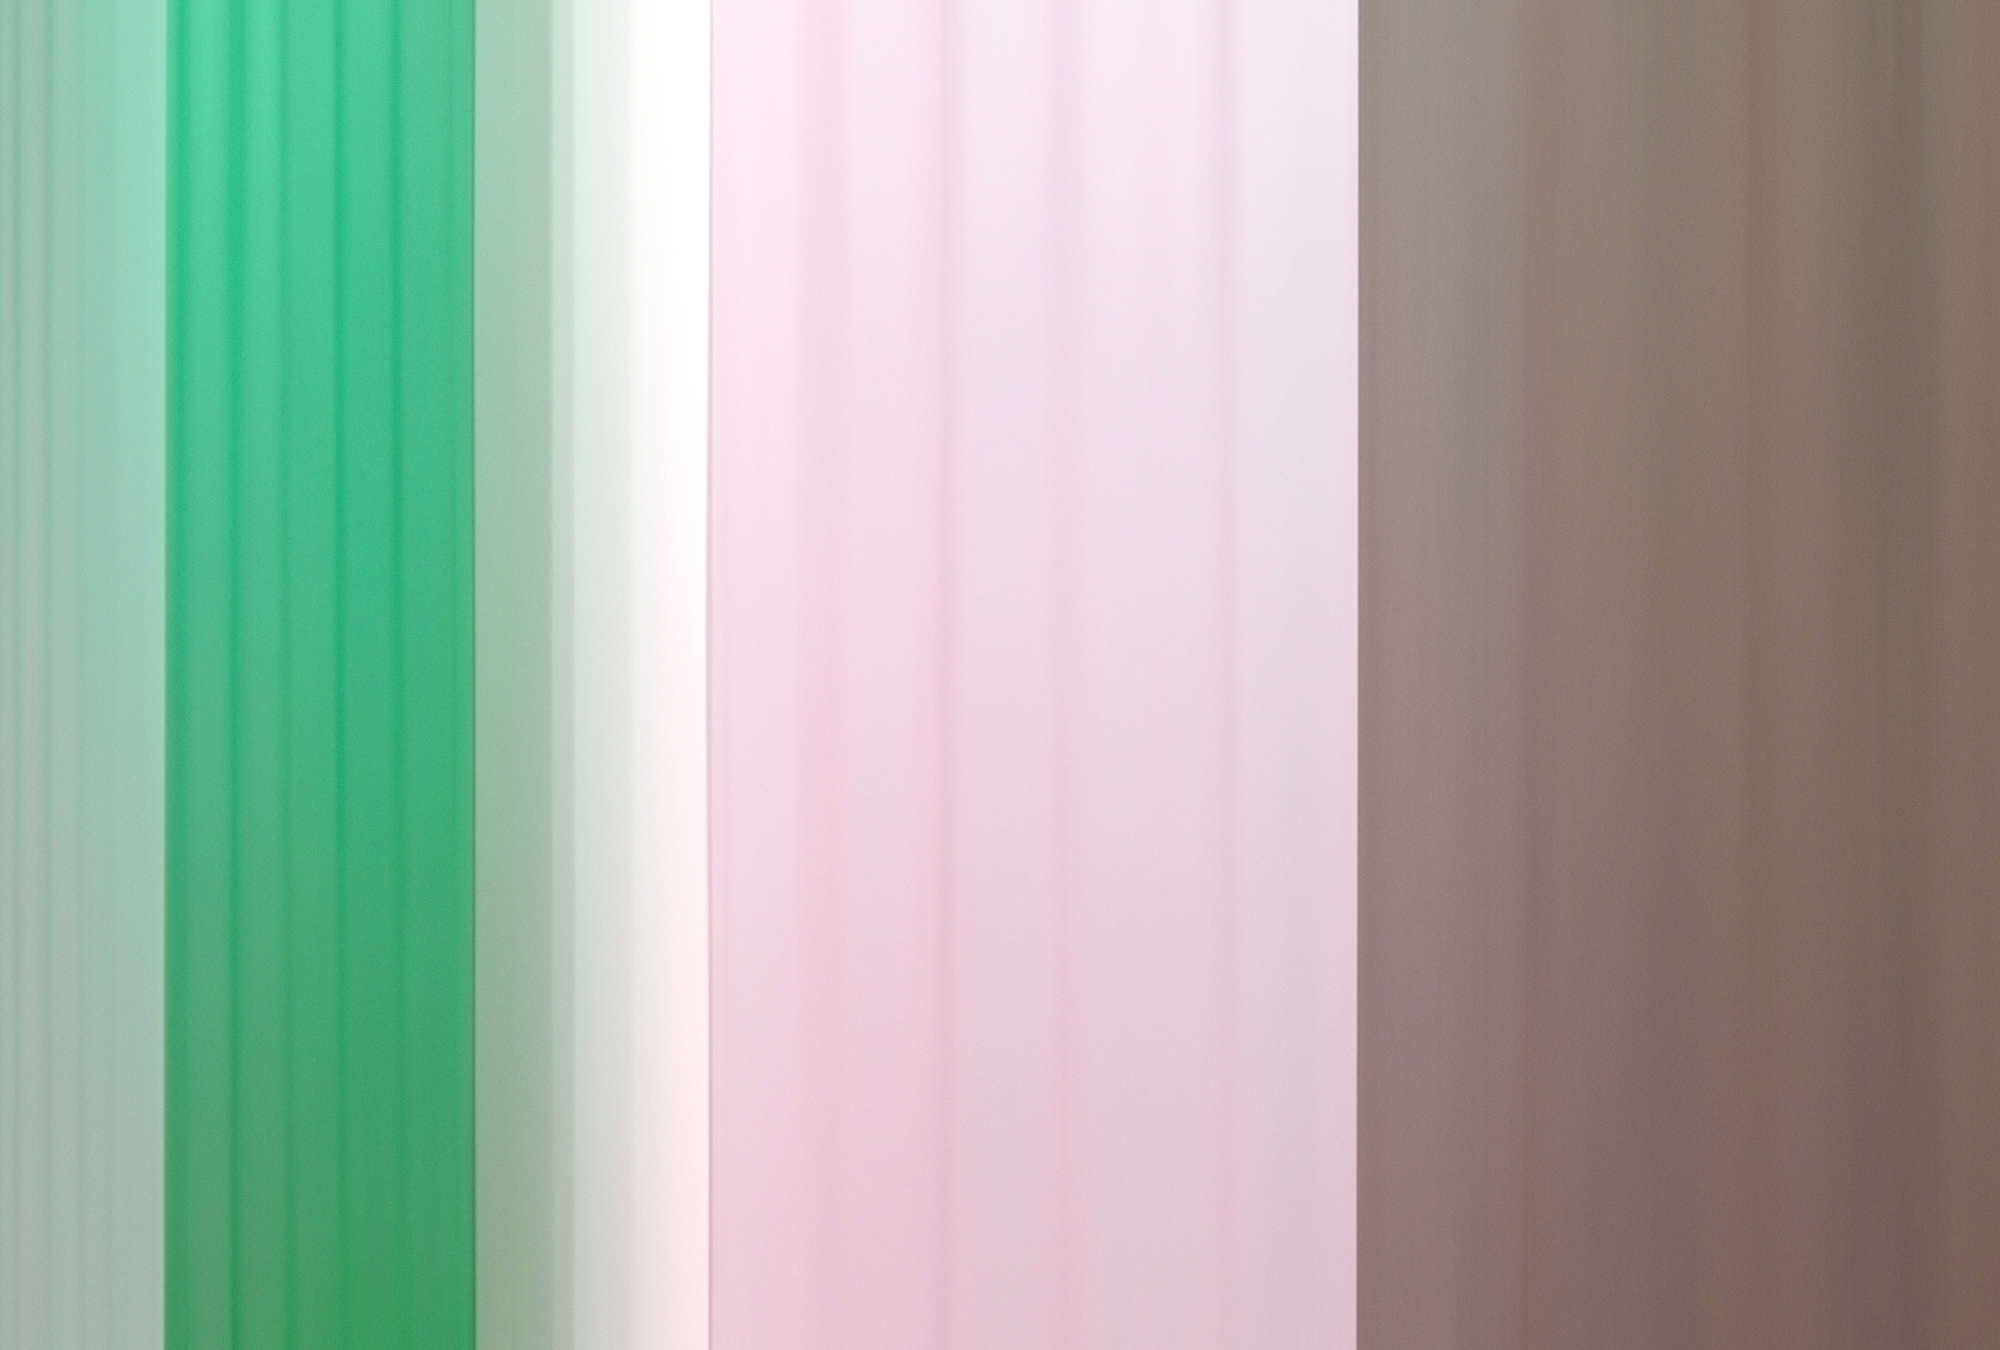             Fotomural »co-colores 1« - Degradado de colores con rayas - Verde Rosa, Marrón | Tela no tejida lisa, ligeramente nacarada y brillante
        